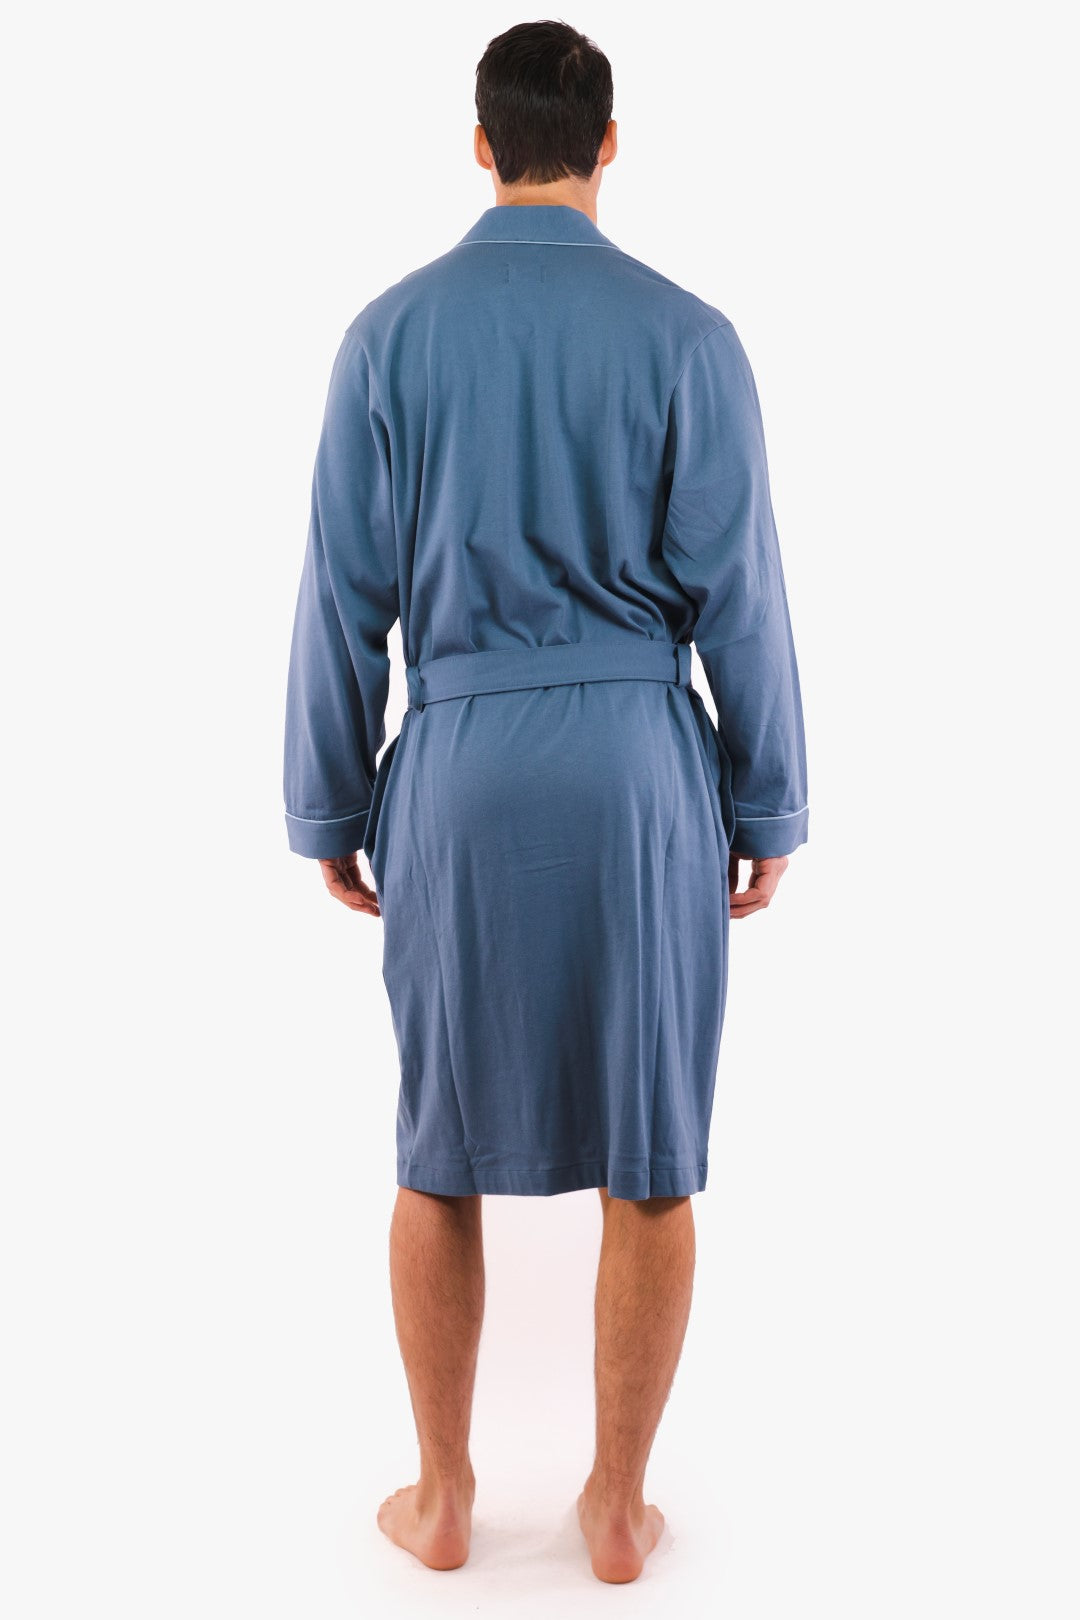 Hugo Boss Blue Dressing Gown